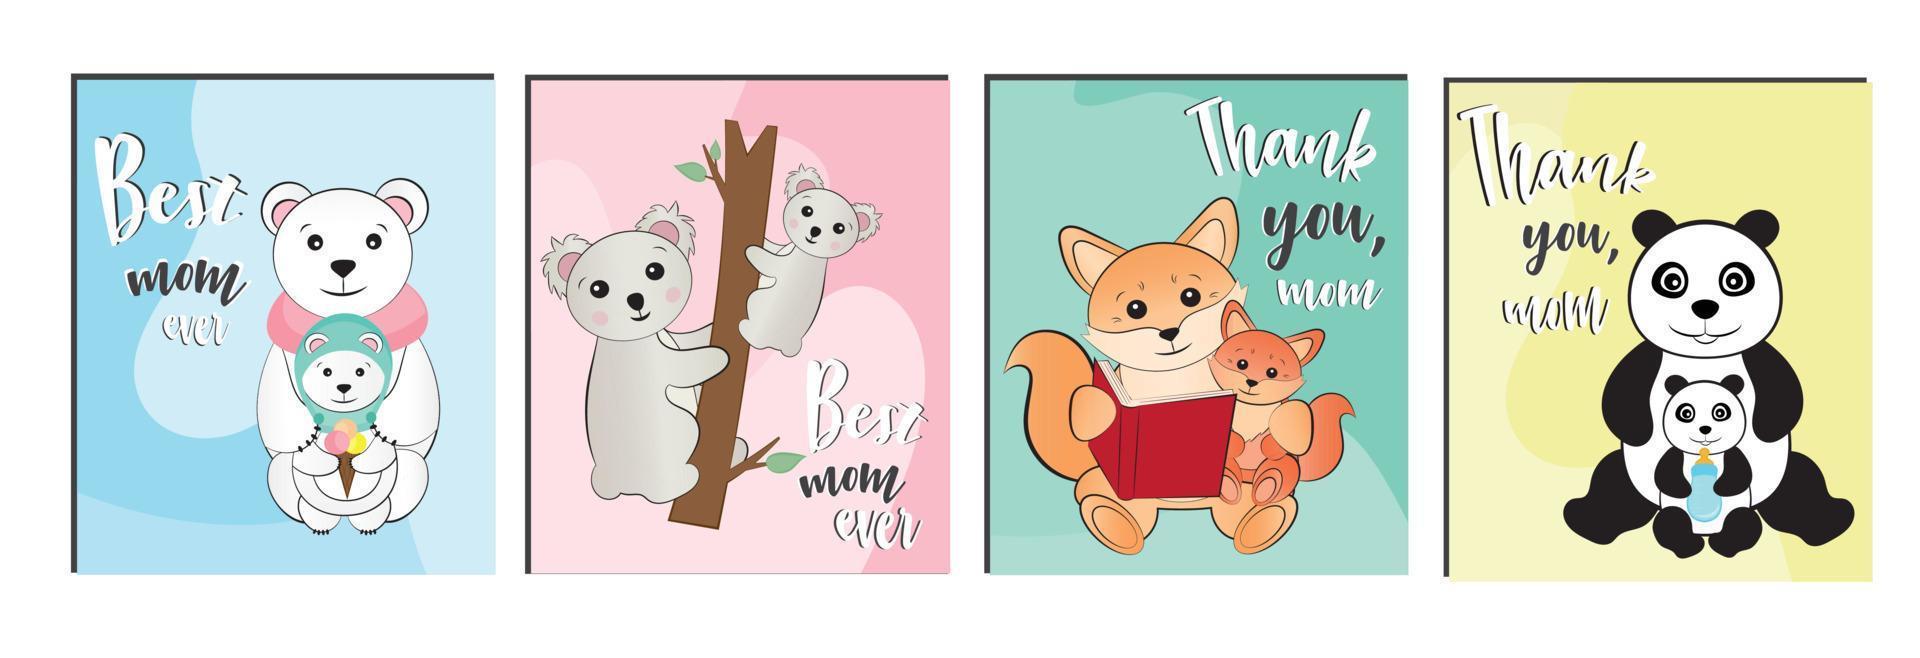 un ensemble d'images avec des animaux mignons pour concevoir une carte postale pour maman. éléments de conception pour féliciter maman joyeux anniversaire, fête des mères. vecteur